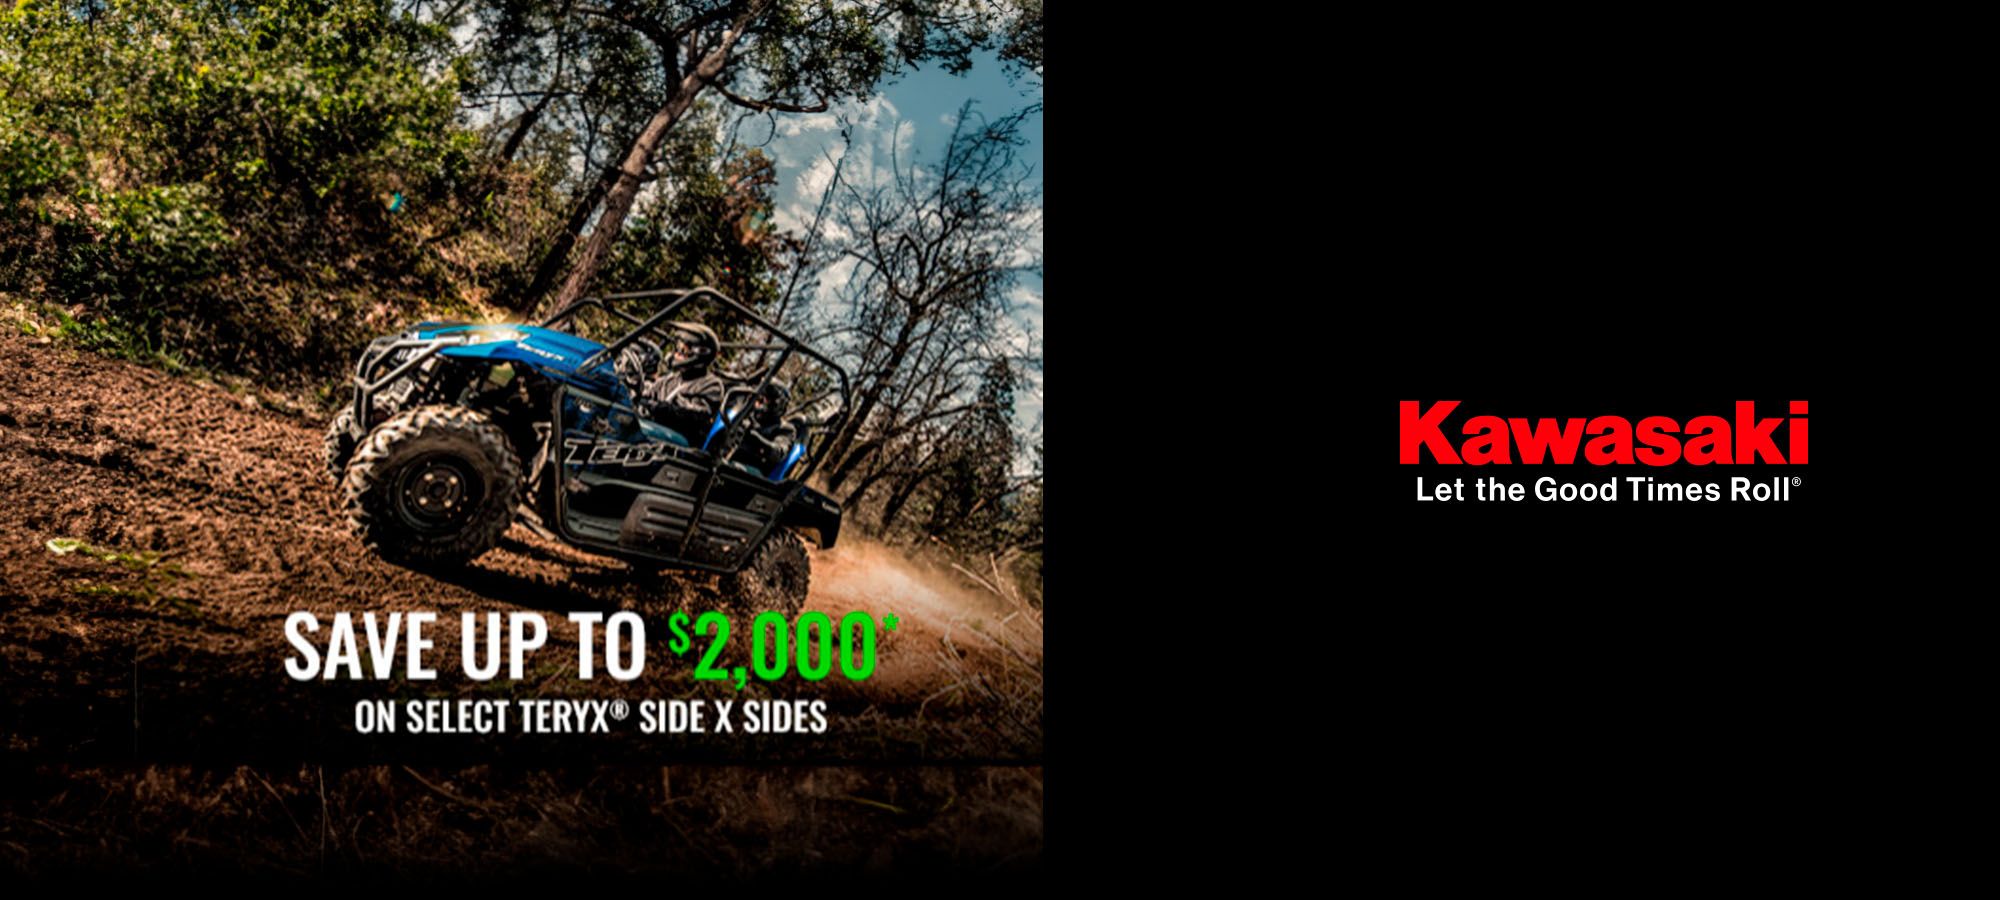 Kawasaki US - Save Up to $2,000* On Select Side X Sides at Big River Motorsports